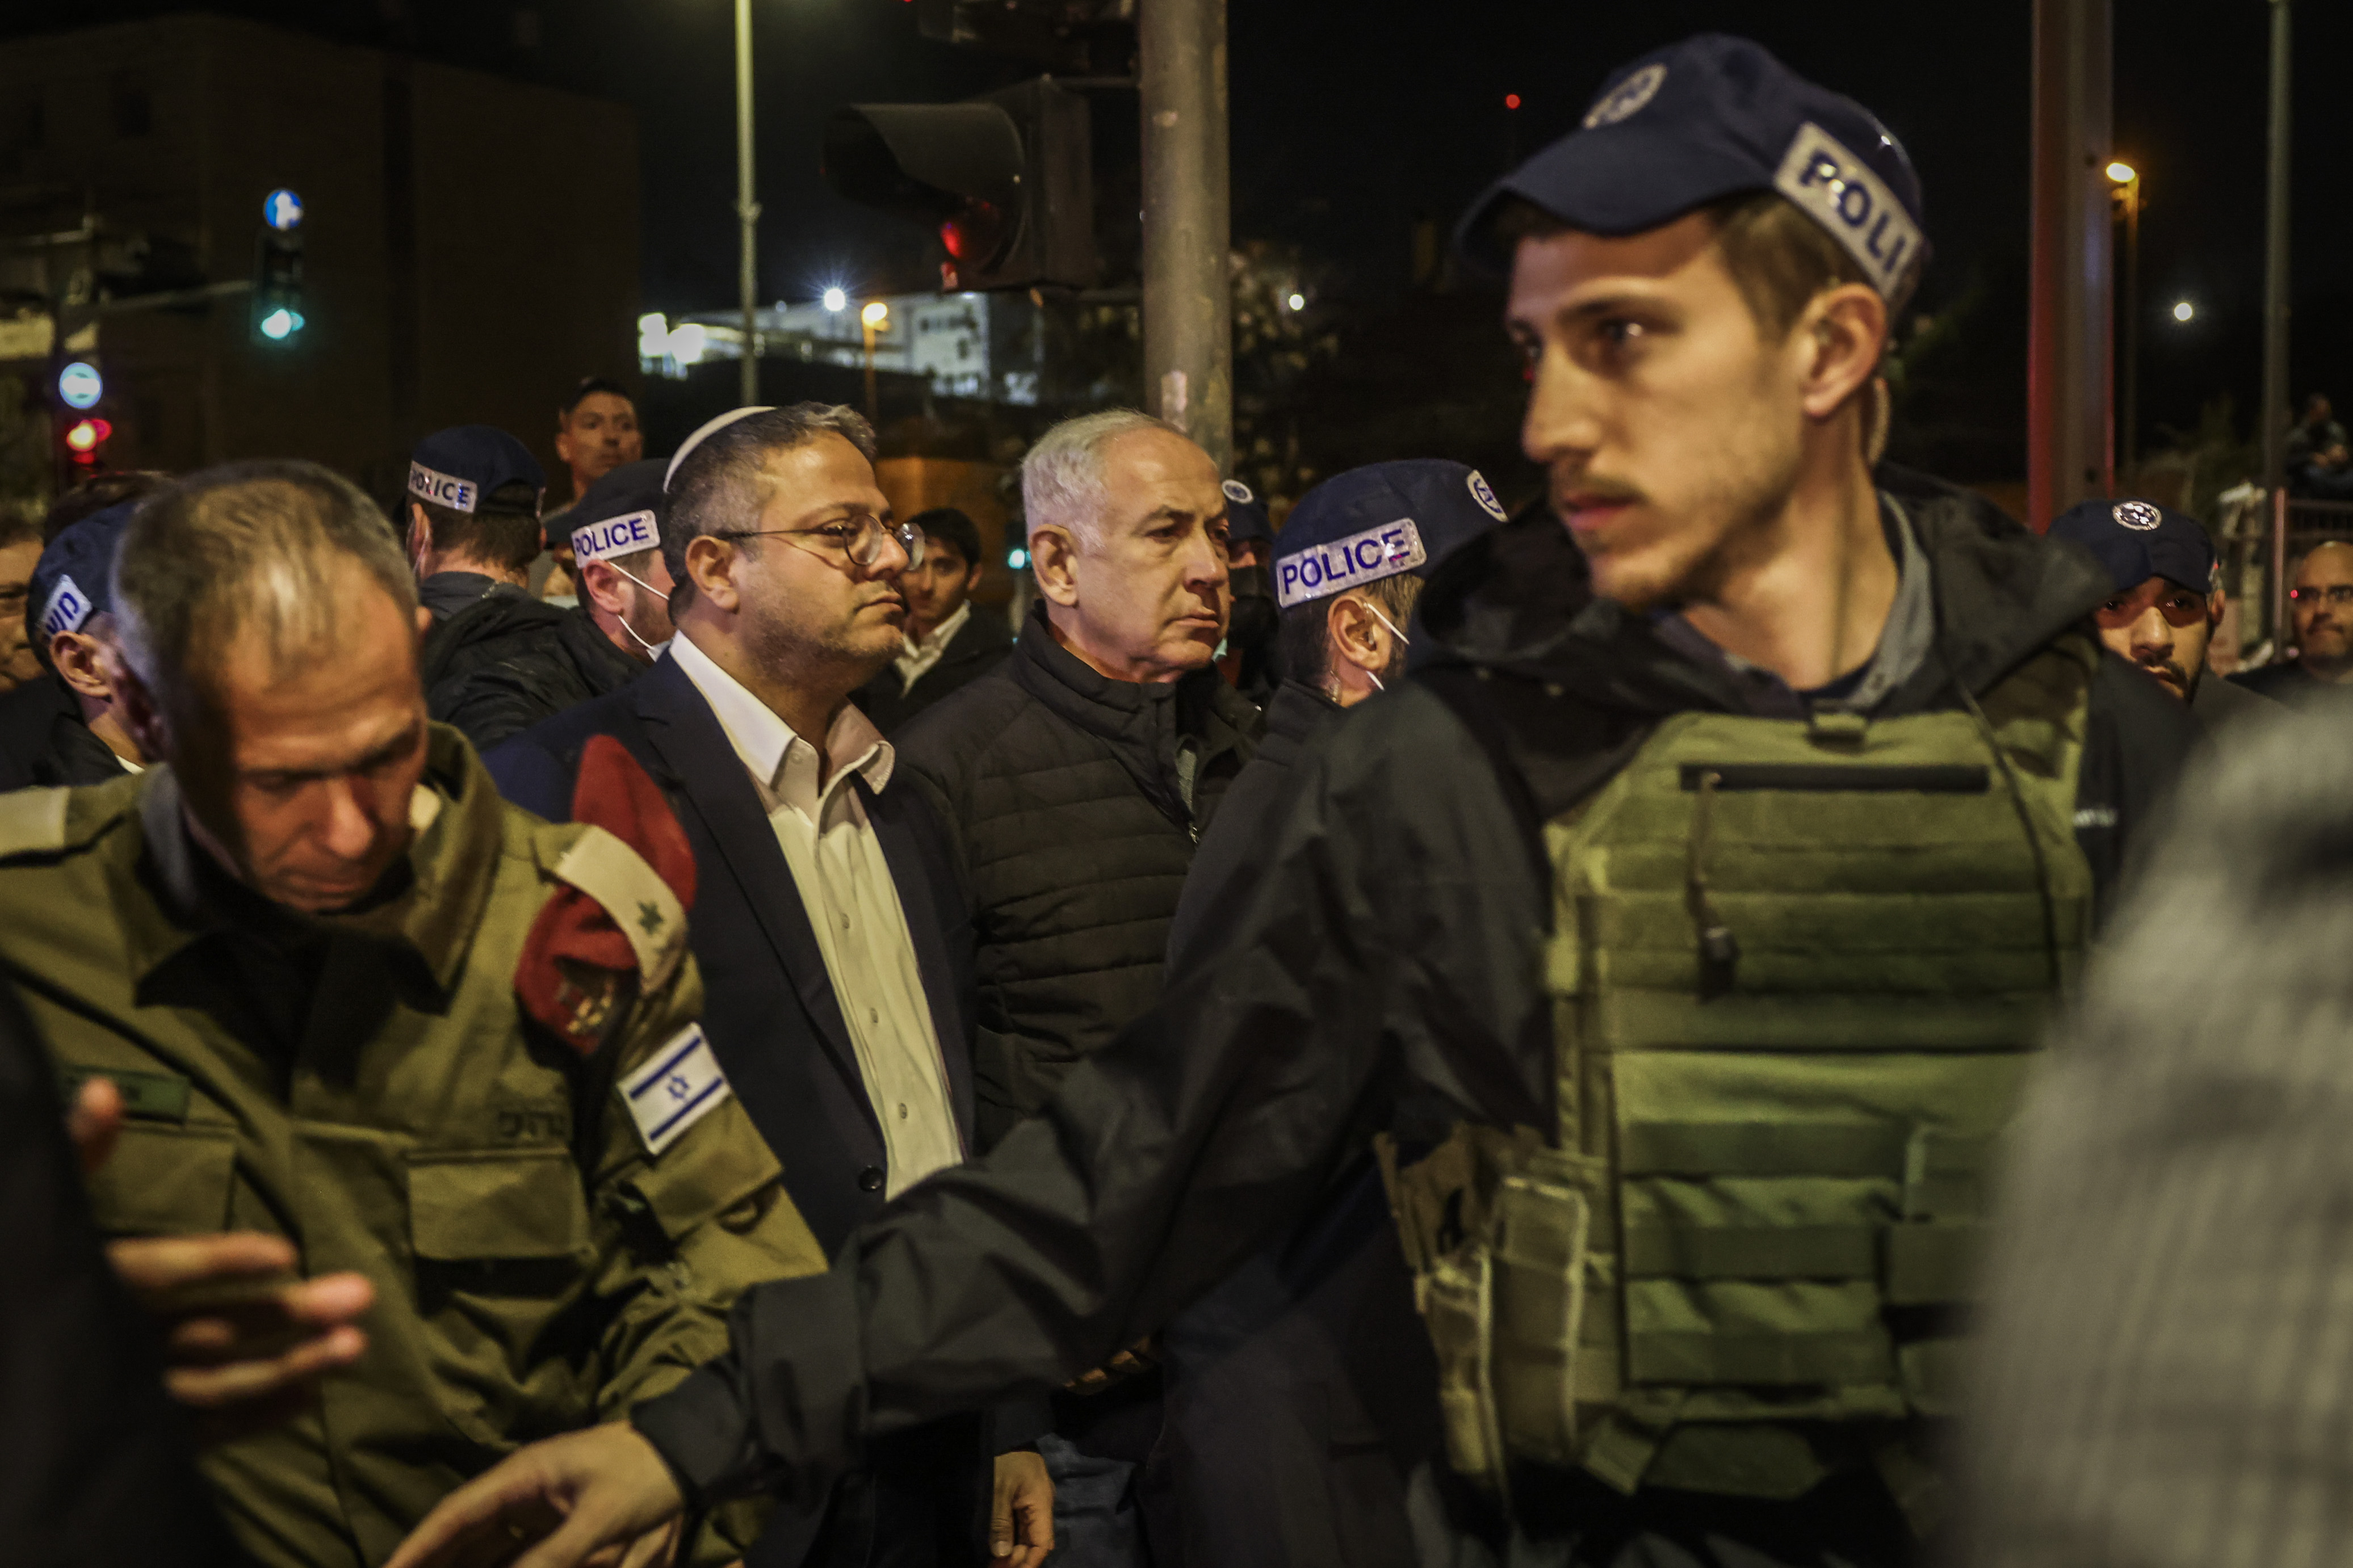 Nach Angriffen in Jerusalem - Israelisches Sicherheitskabinett beschließt Anti-Terror-Maßnahmen